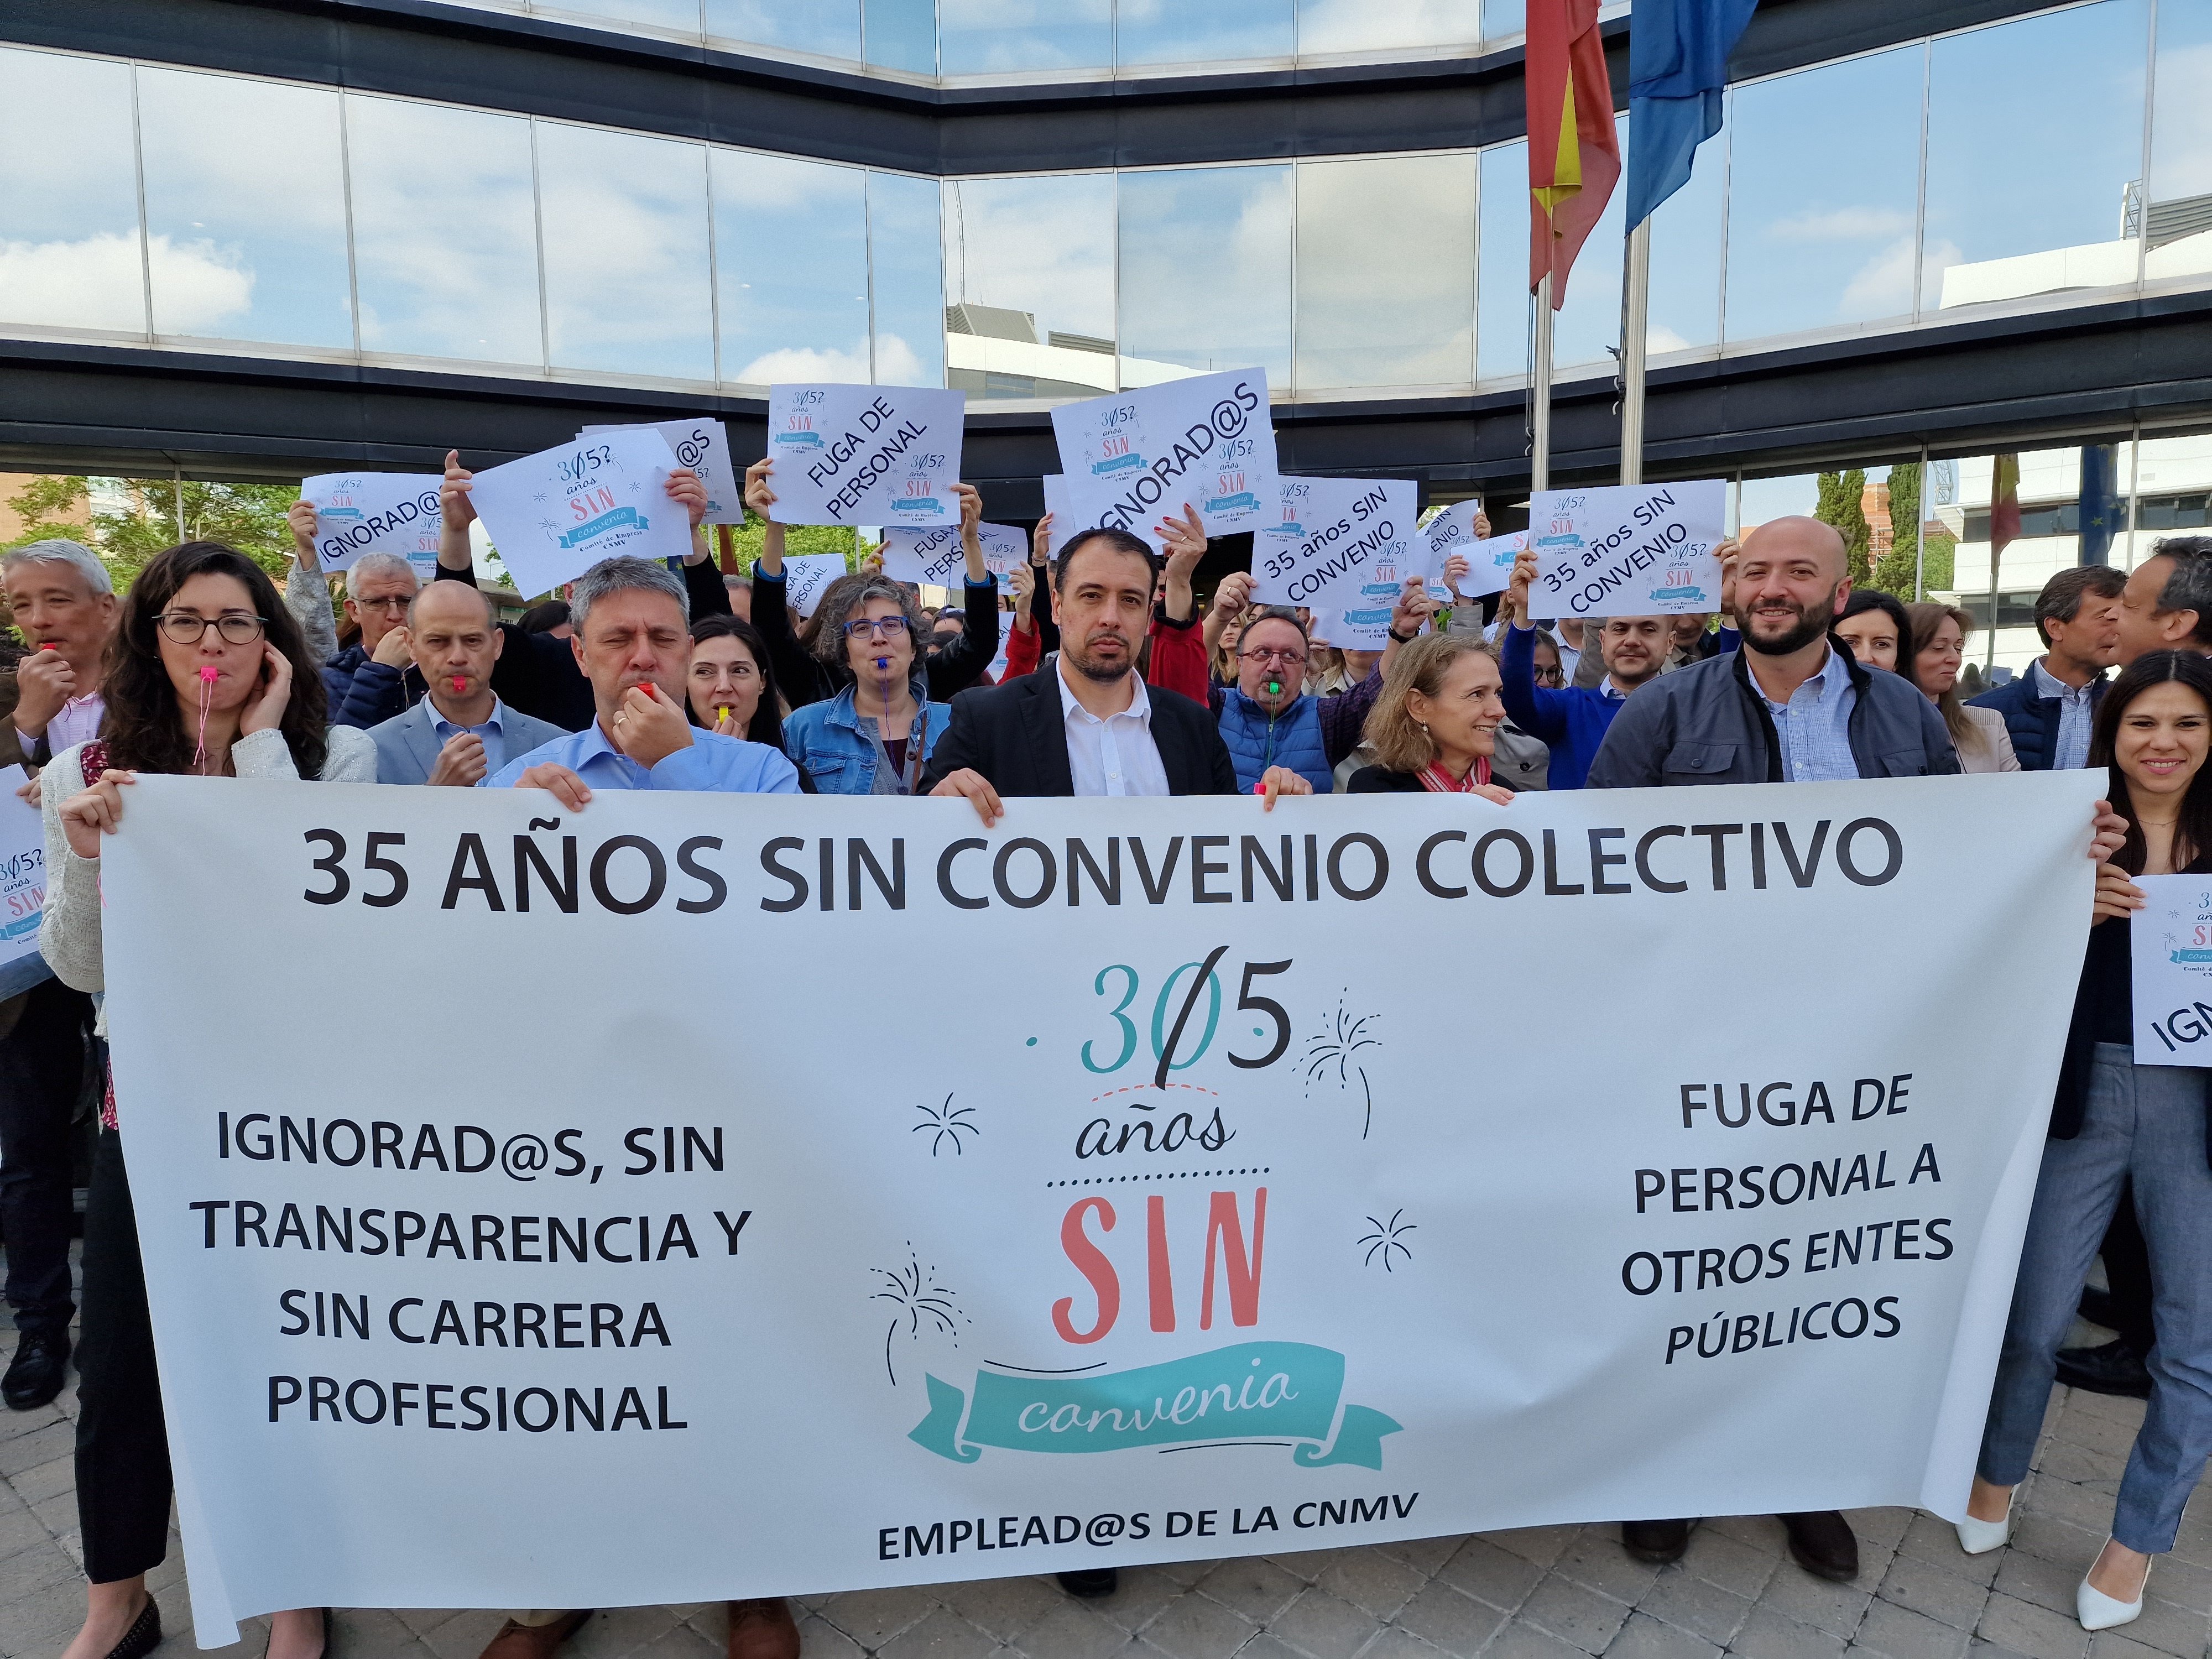 Els treballadors de la CNMV es concentraran en Hisenda per exigir el seu conveni